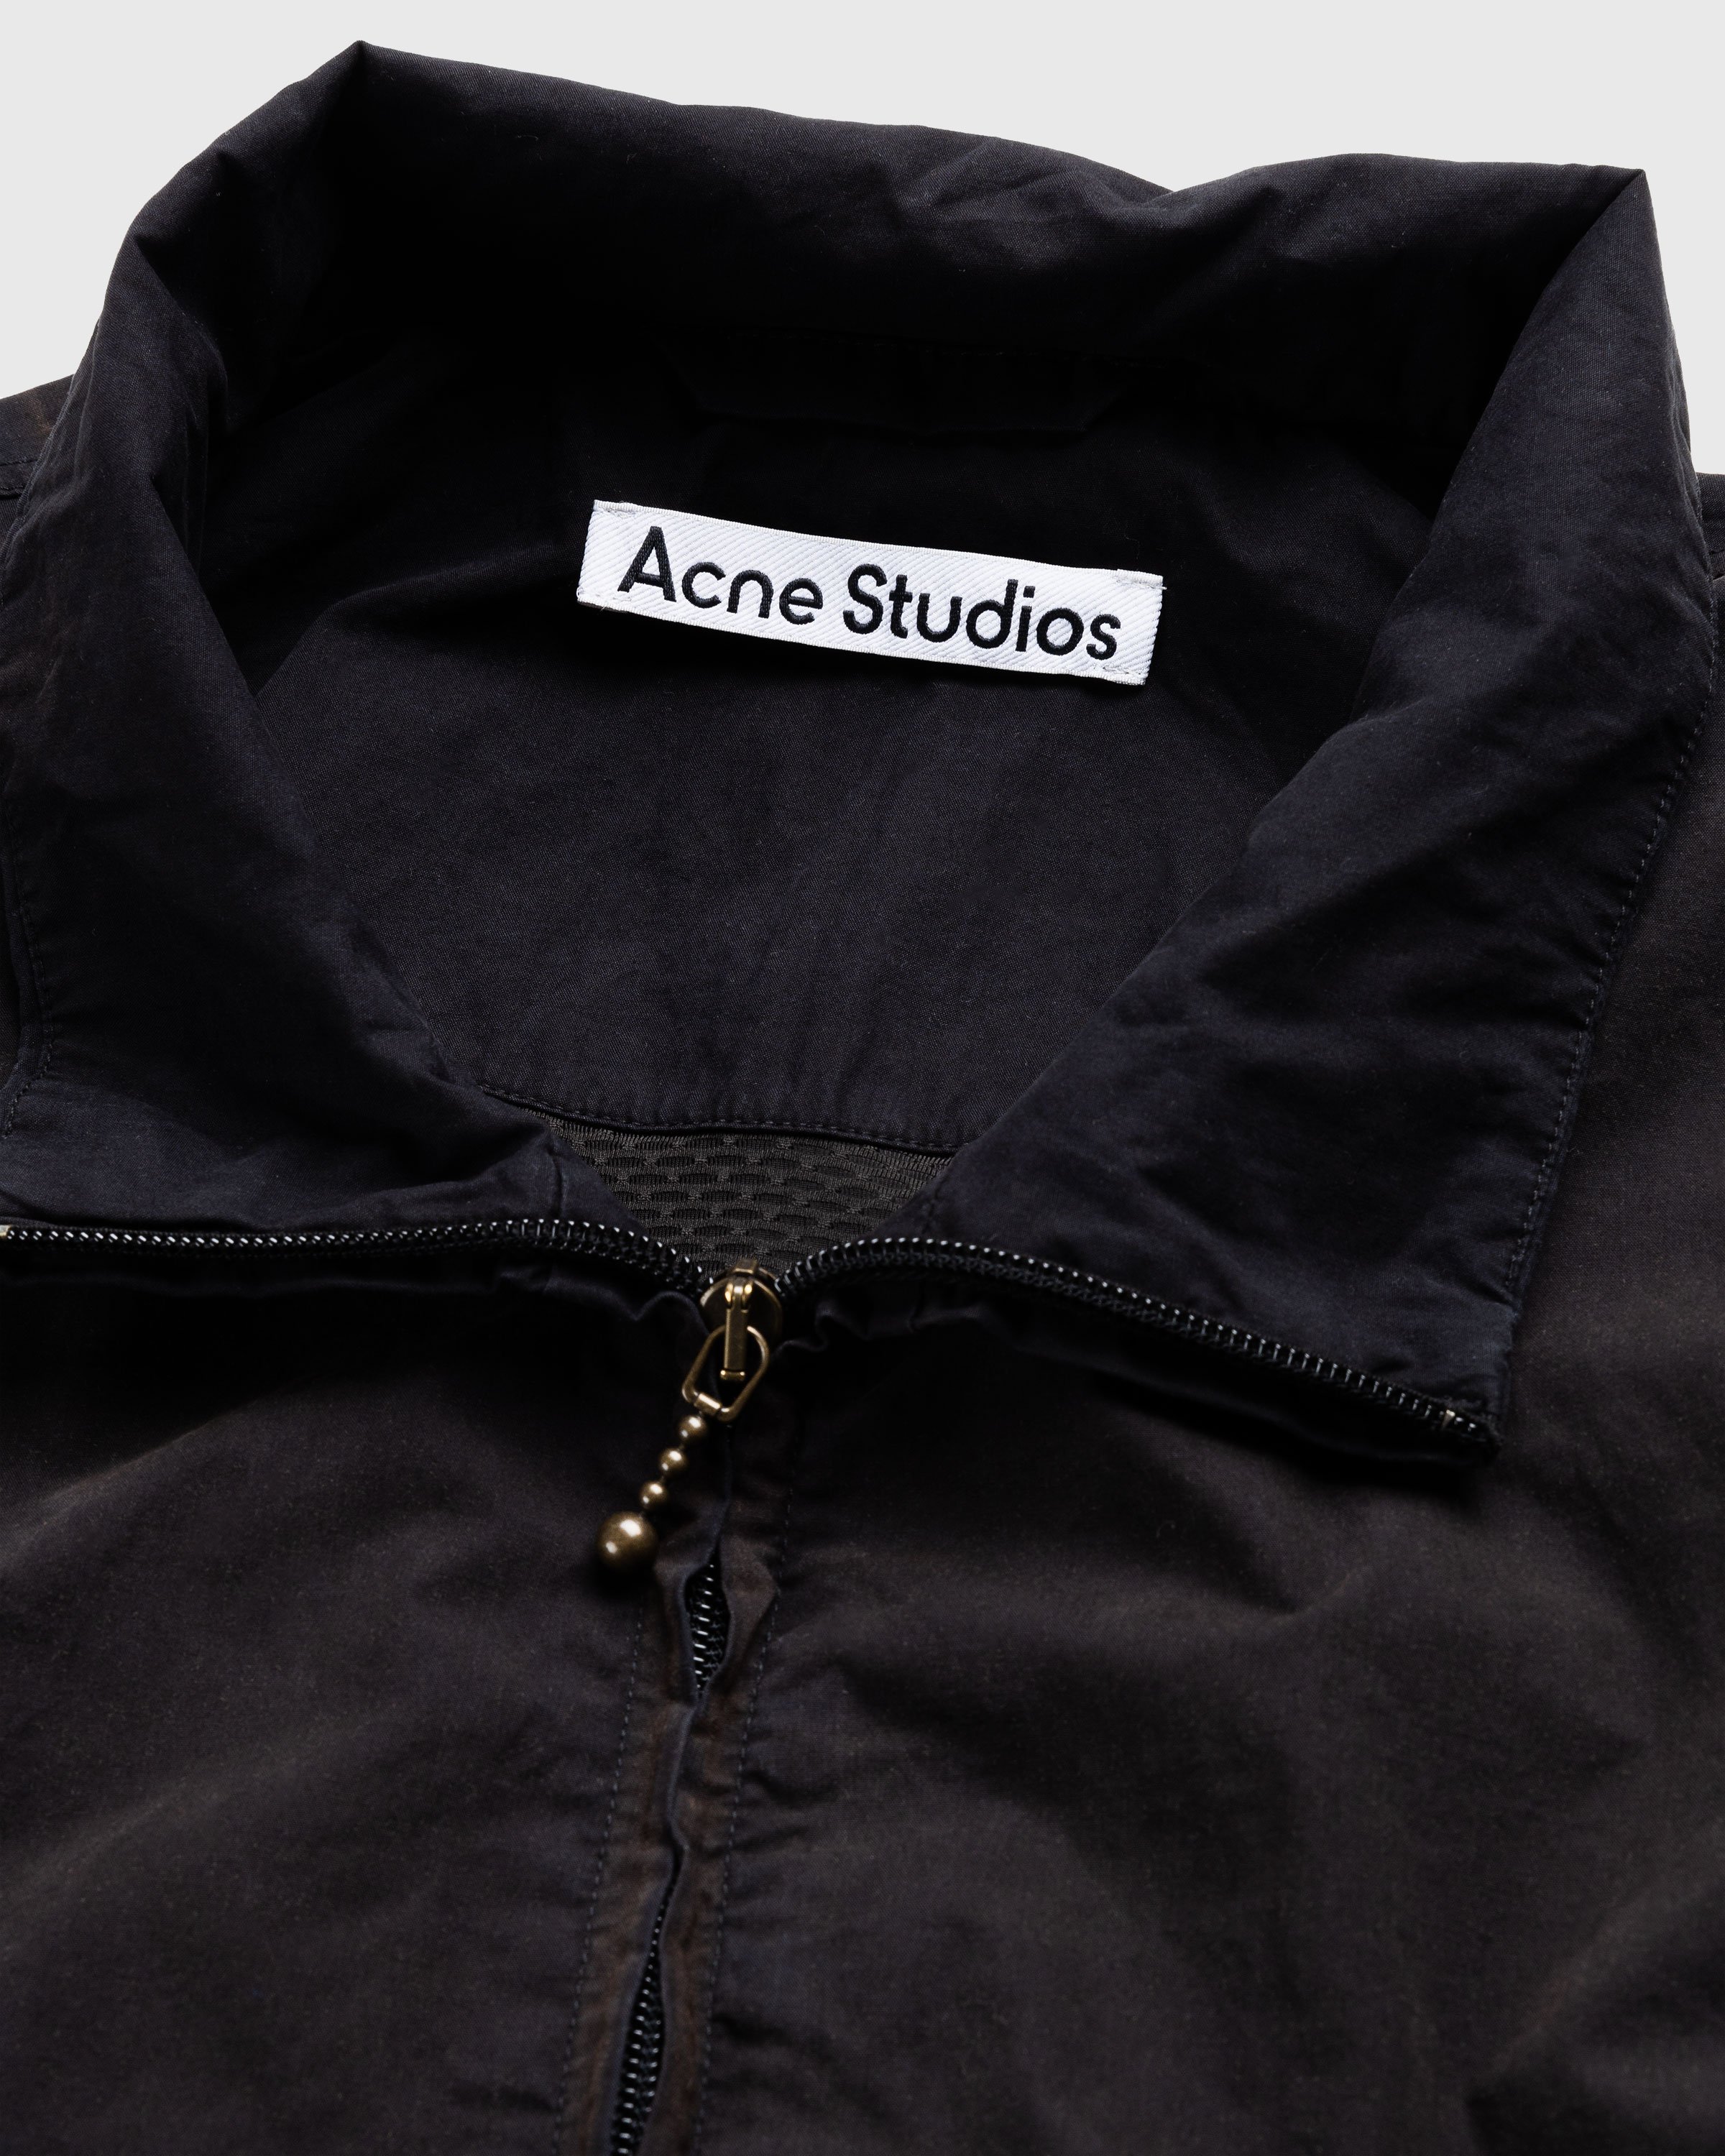 Acne Studios - Logo Zipper Jacket Black - Clothing - Black - Image 5